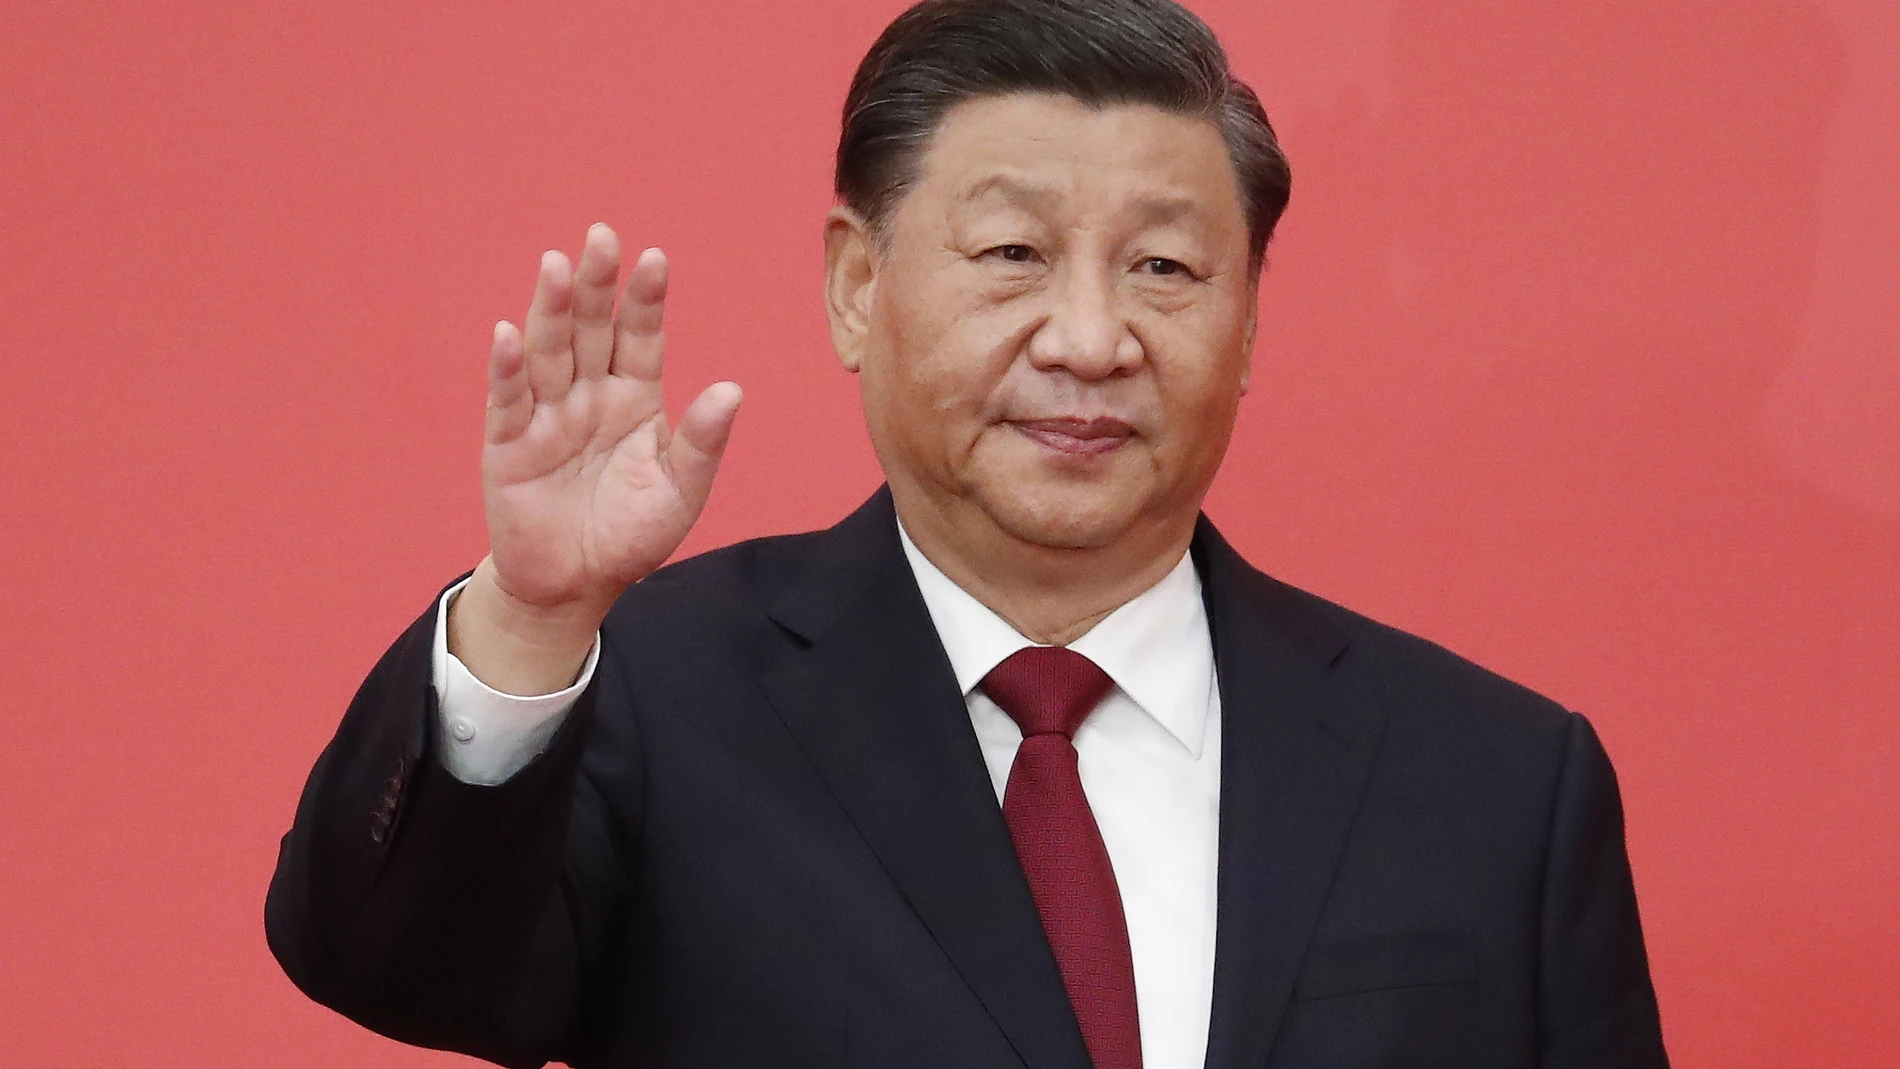 flotante beneficio Satisfacer China da poder ilimitado para Xi Jinping, el líder más autoritario desde Mao